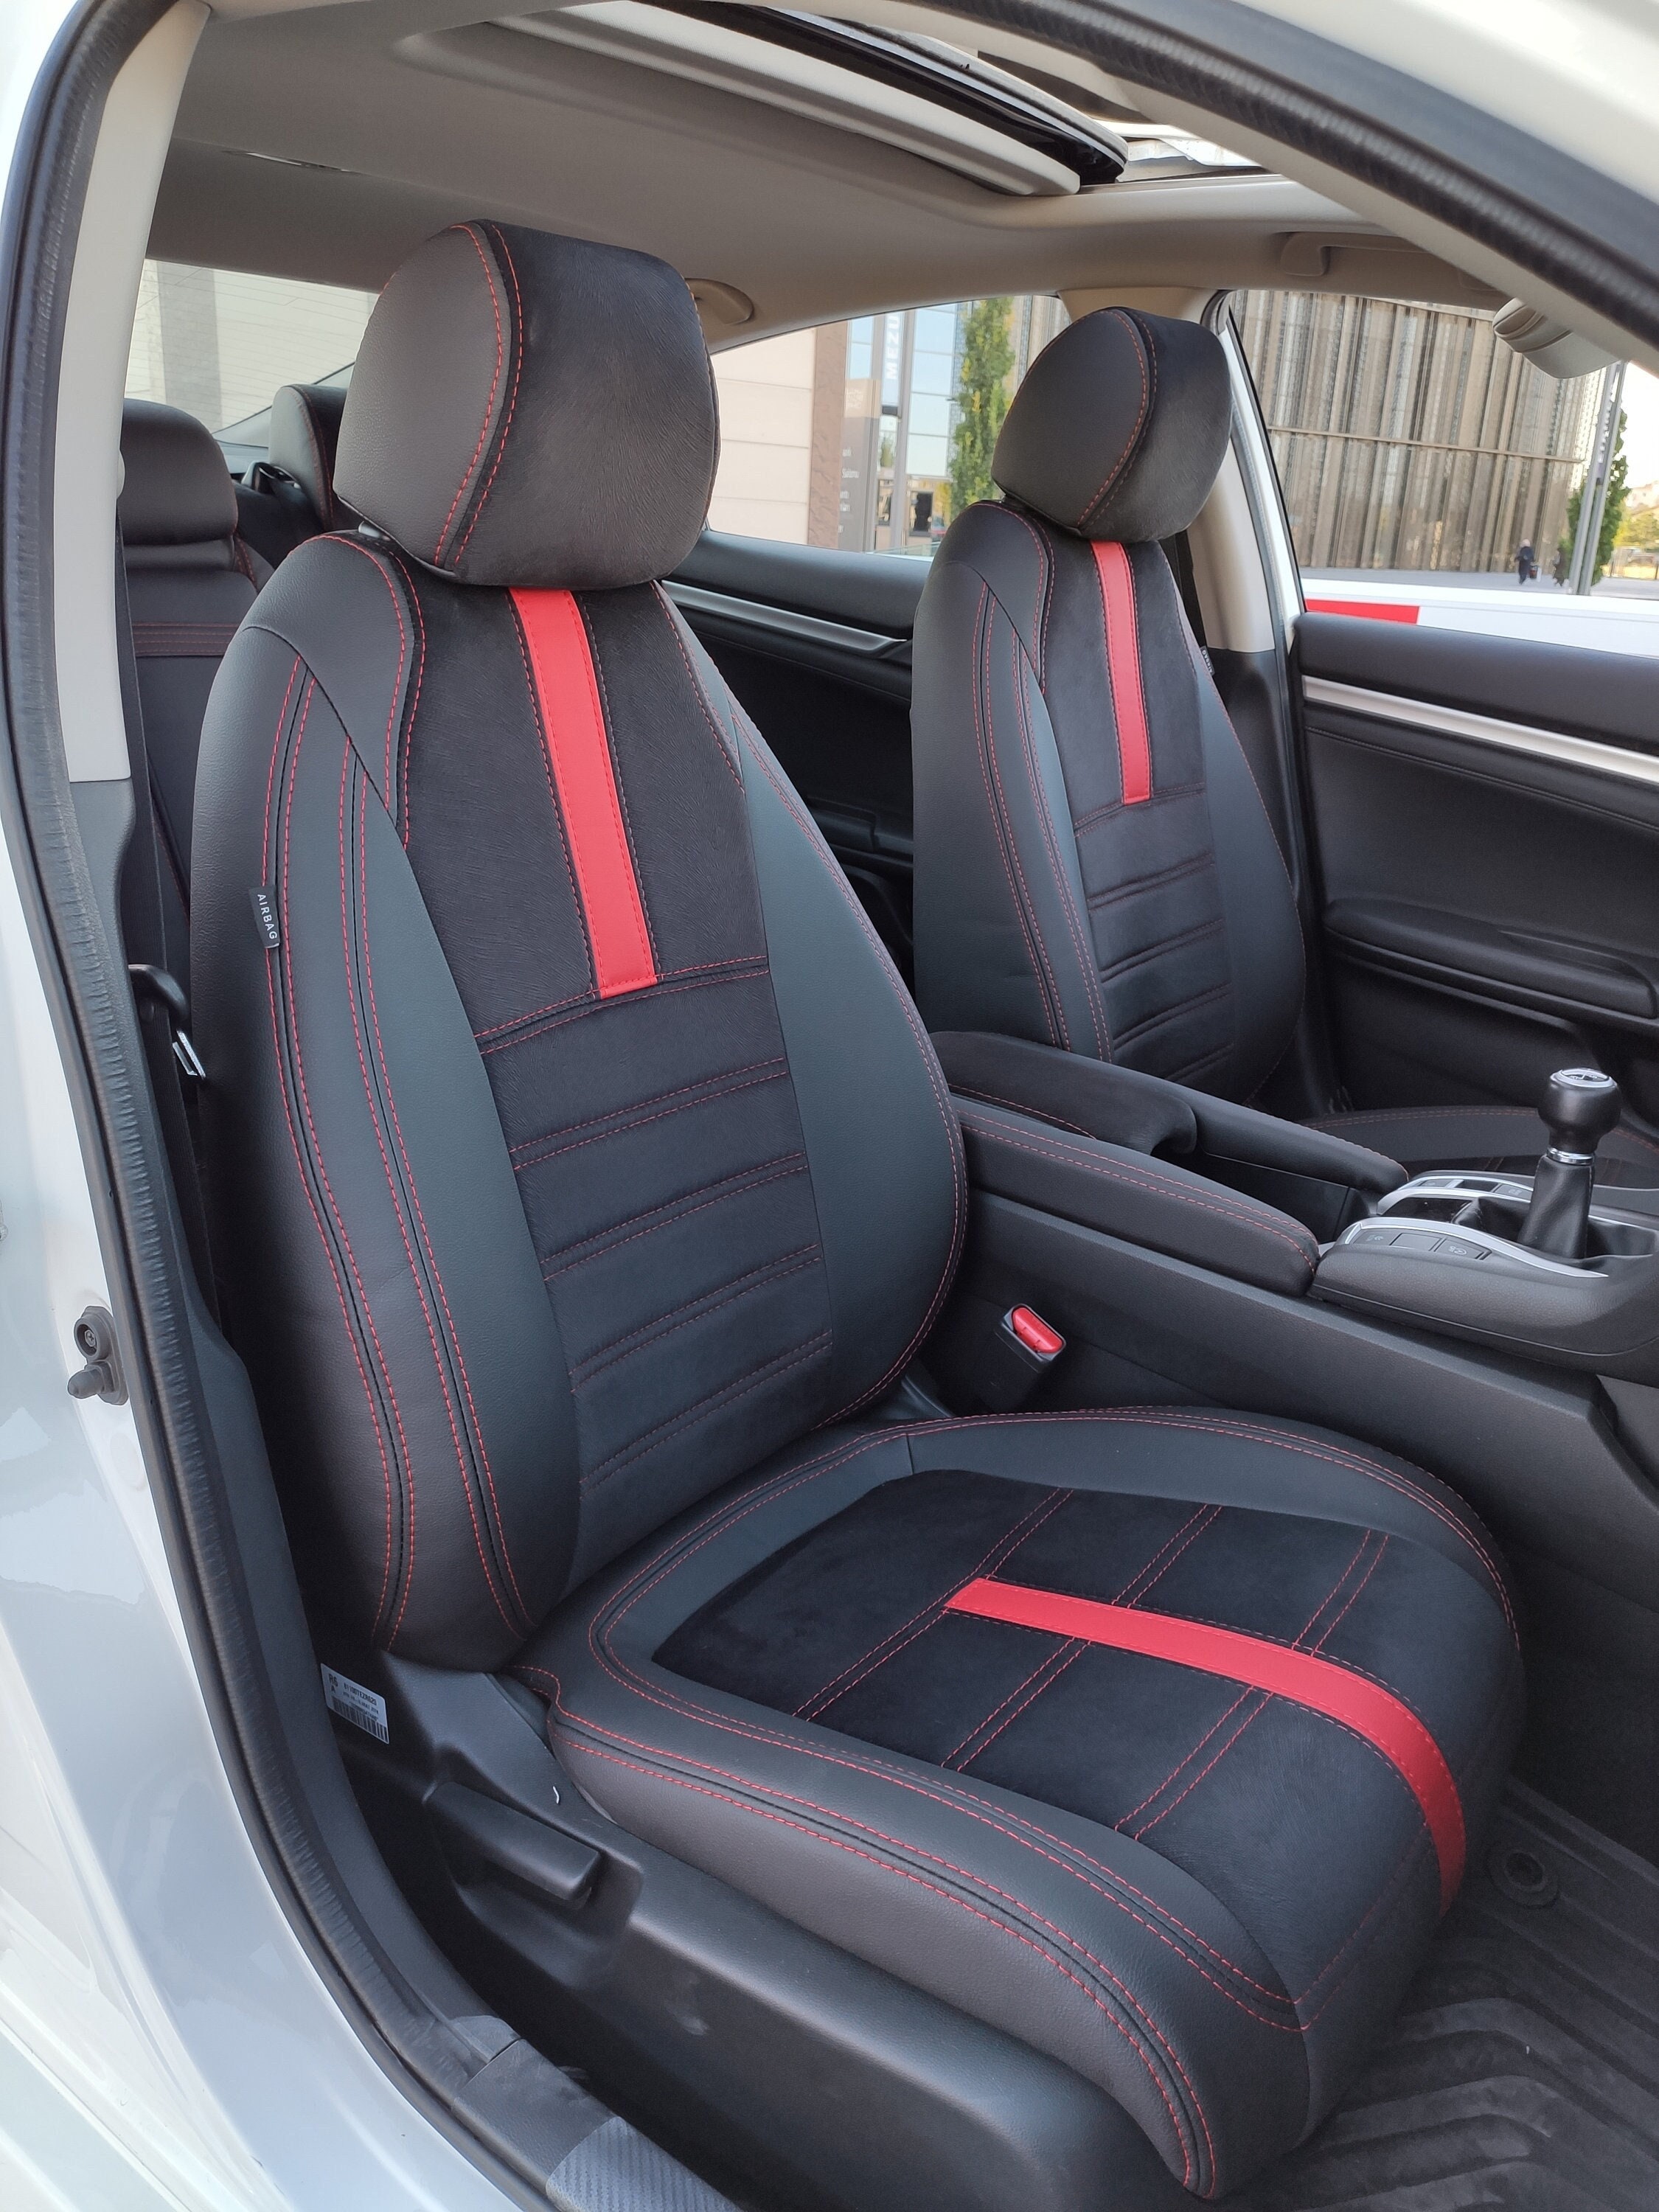 Sitzbezüge aus Schwarz Leder und Grün Stoff für Peugeot 205 GTI